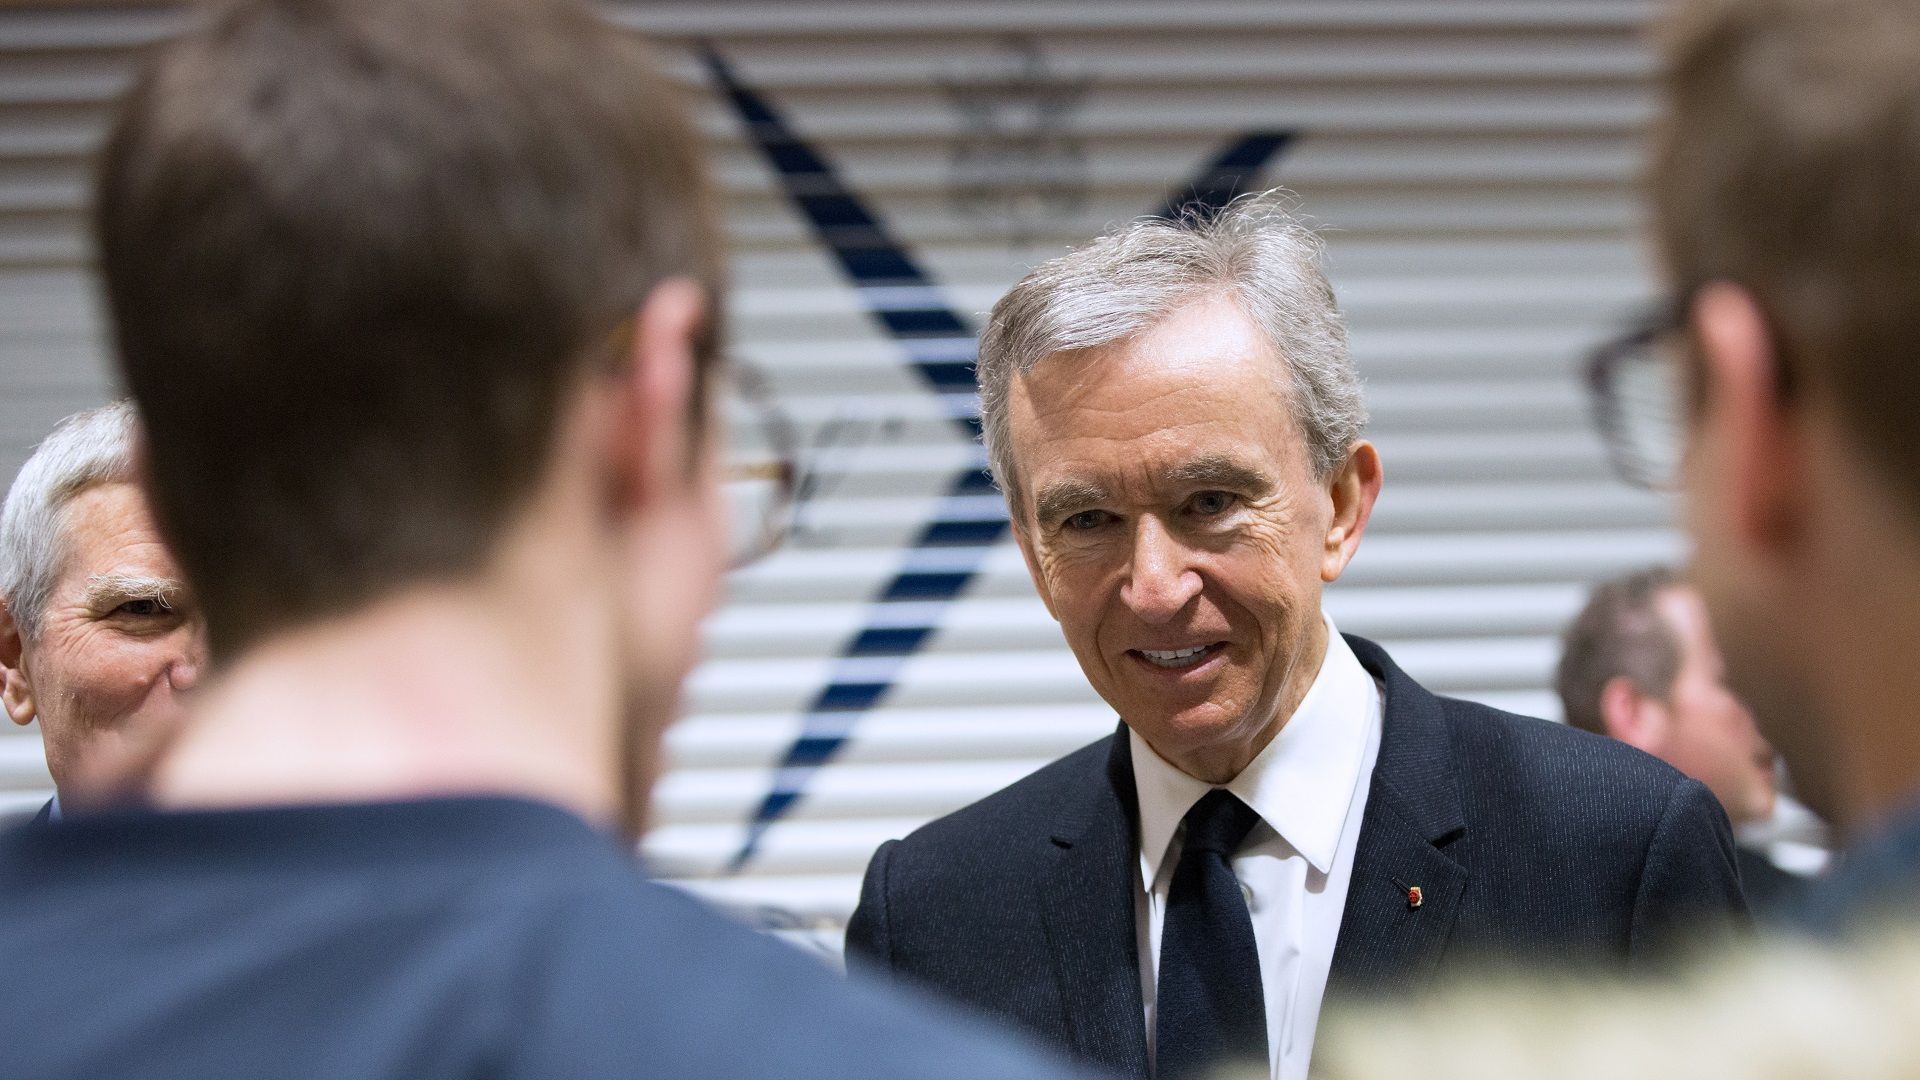 Meet Antoine Arnault, billionaire Bernard Arnault's eldest son: he